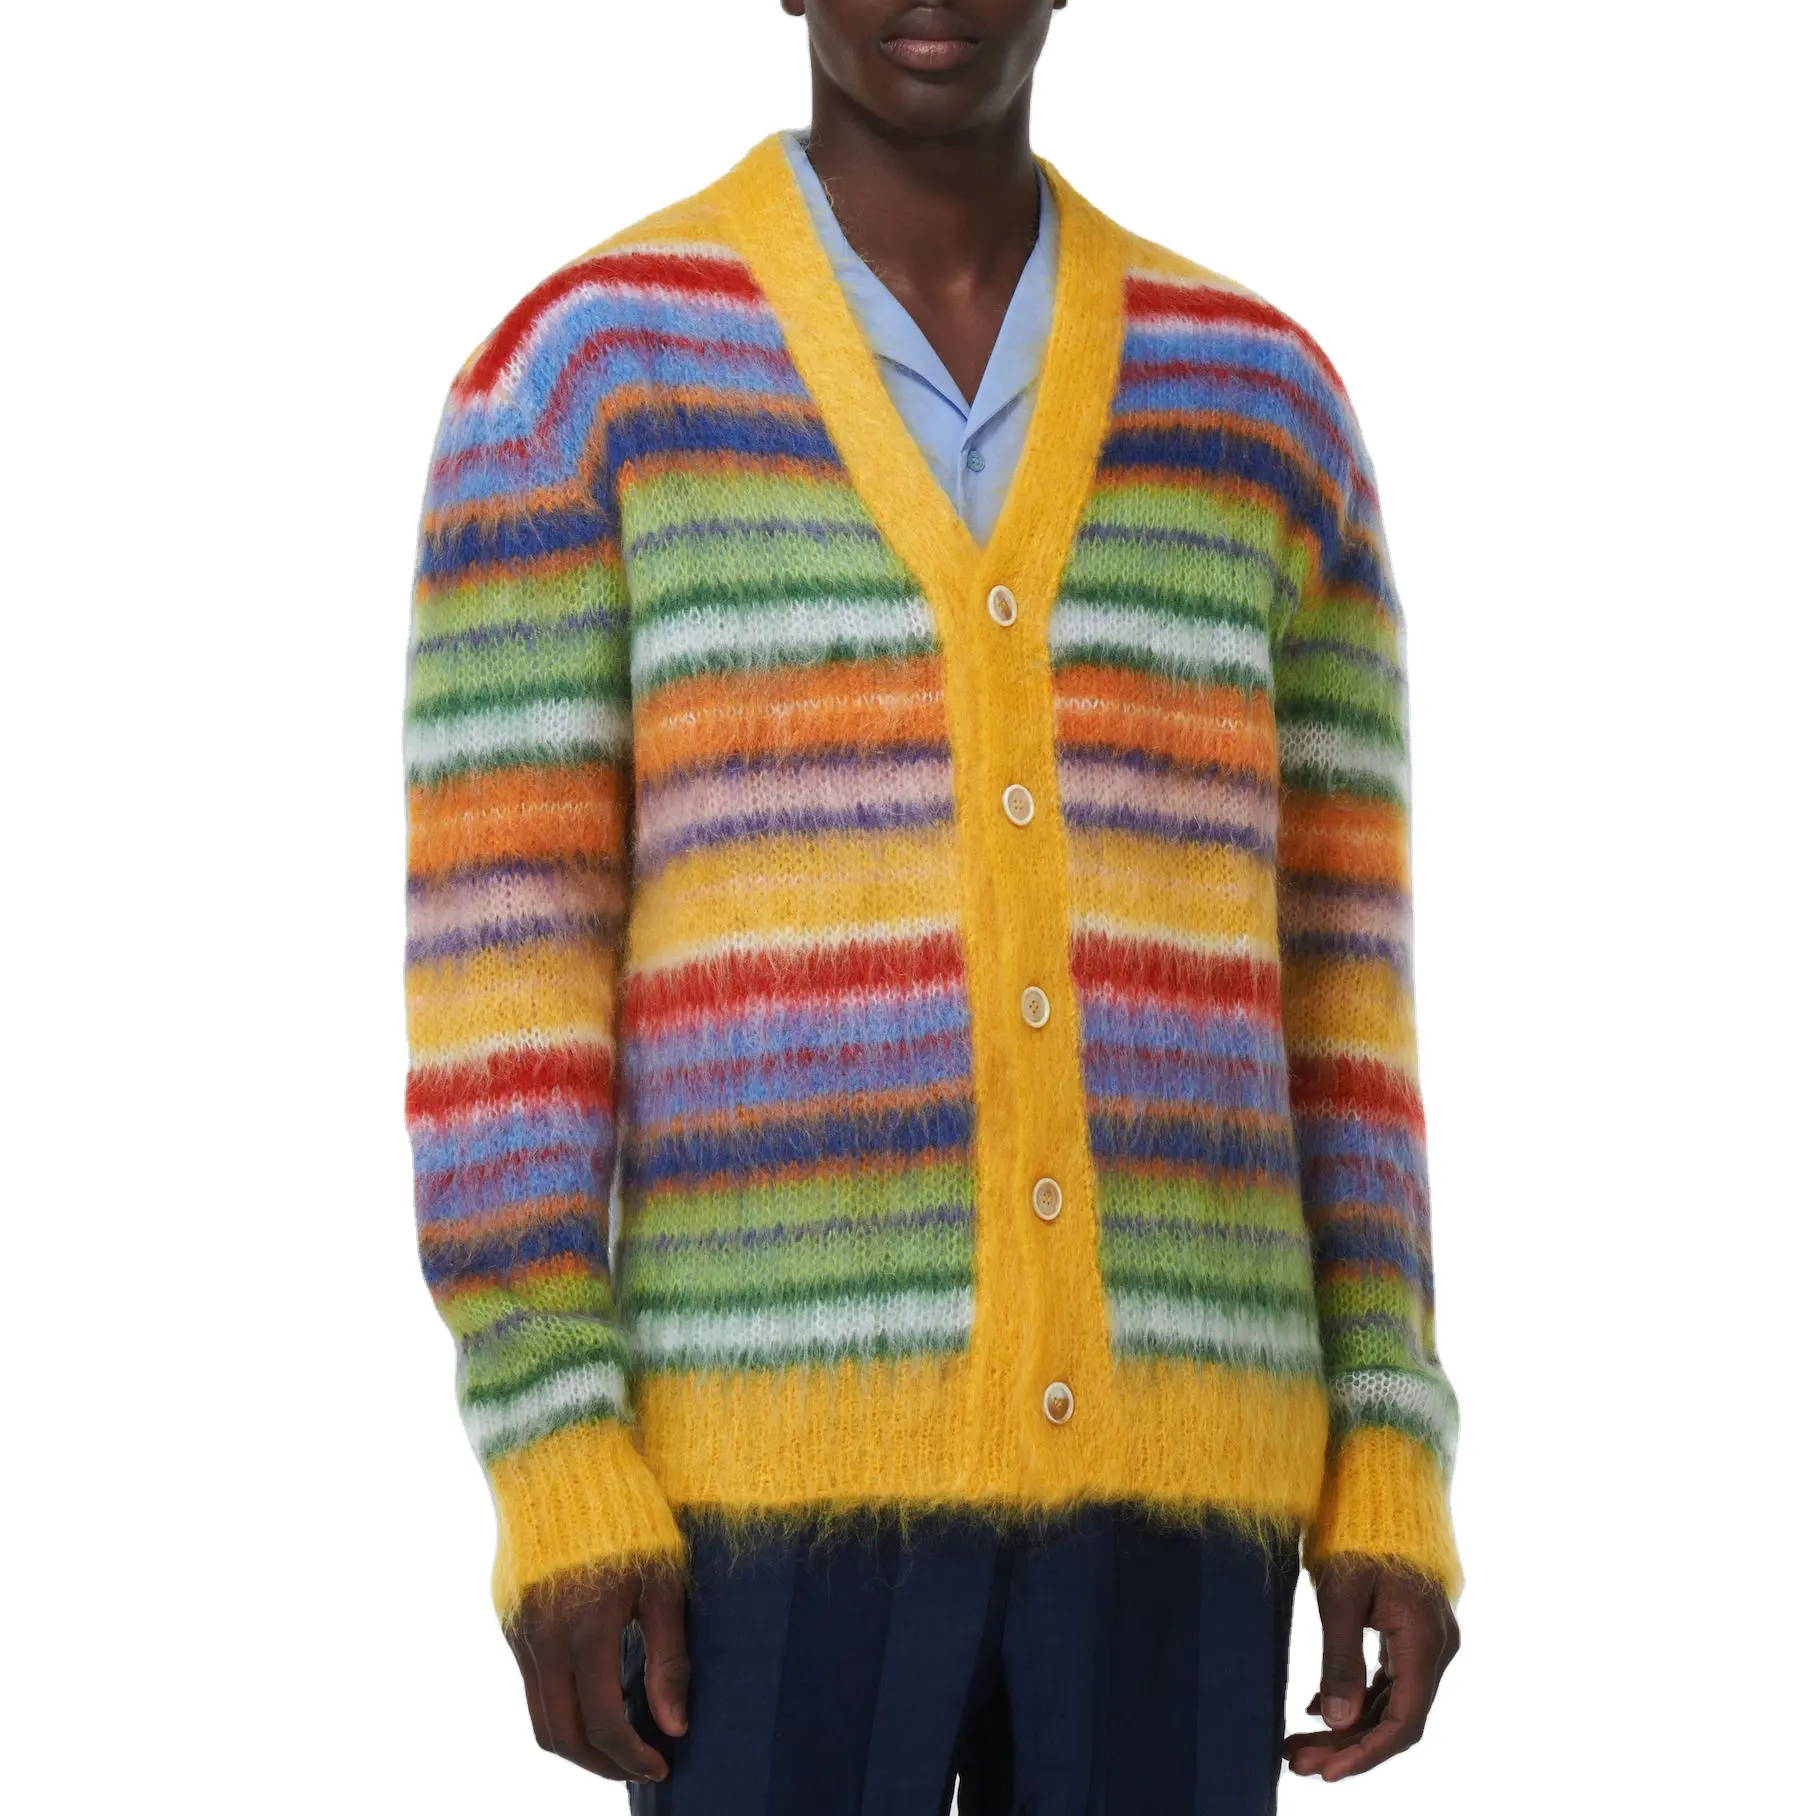 Custom OEM   ODM men mohair sweater Fuzzy Long Sleeve knitwear winter Cardigan coat Striped knit top mohair knitted sweater men